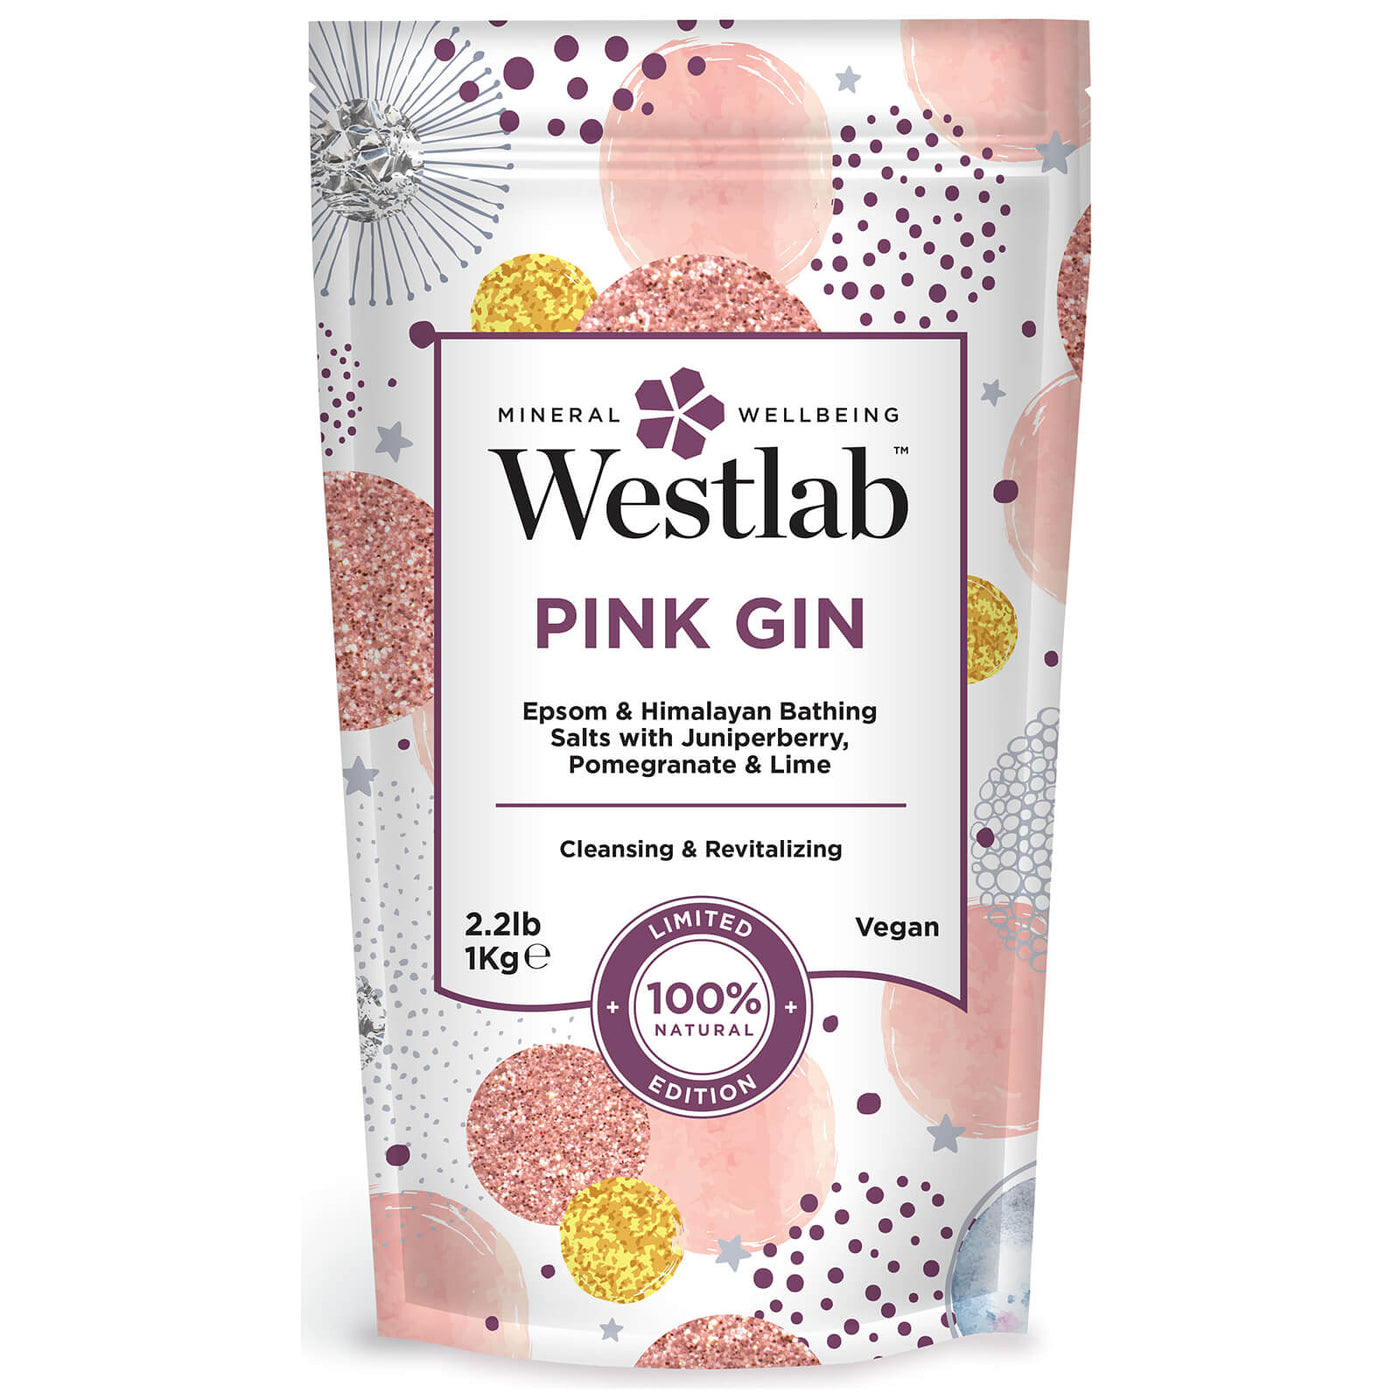 Westlab: Pink Gin - illuminations Wellbeing Shop Online